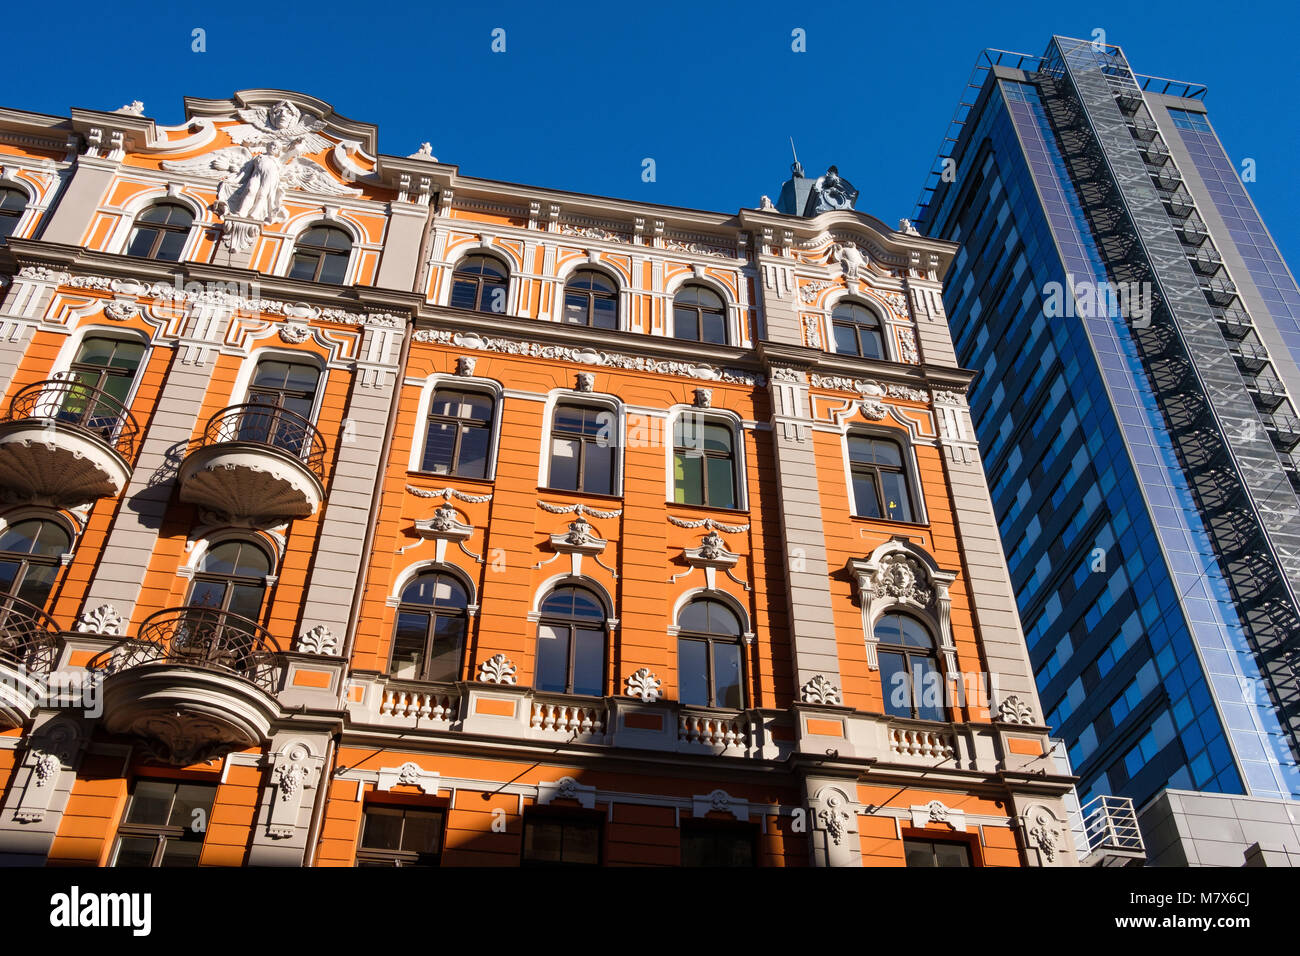 La Lettonie, Riga. Bâtiments dans le style Art Nouveau dans la vieille ville médiévale (Riga). Façade rénovée près de la construction de l'hôtel Radisson. Banque D'Images